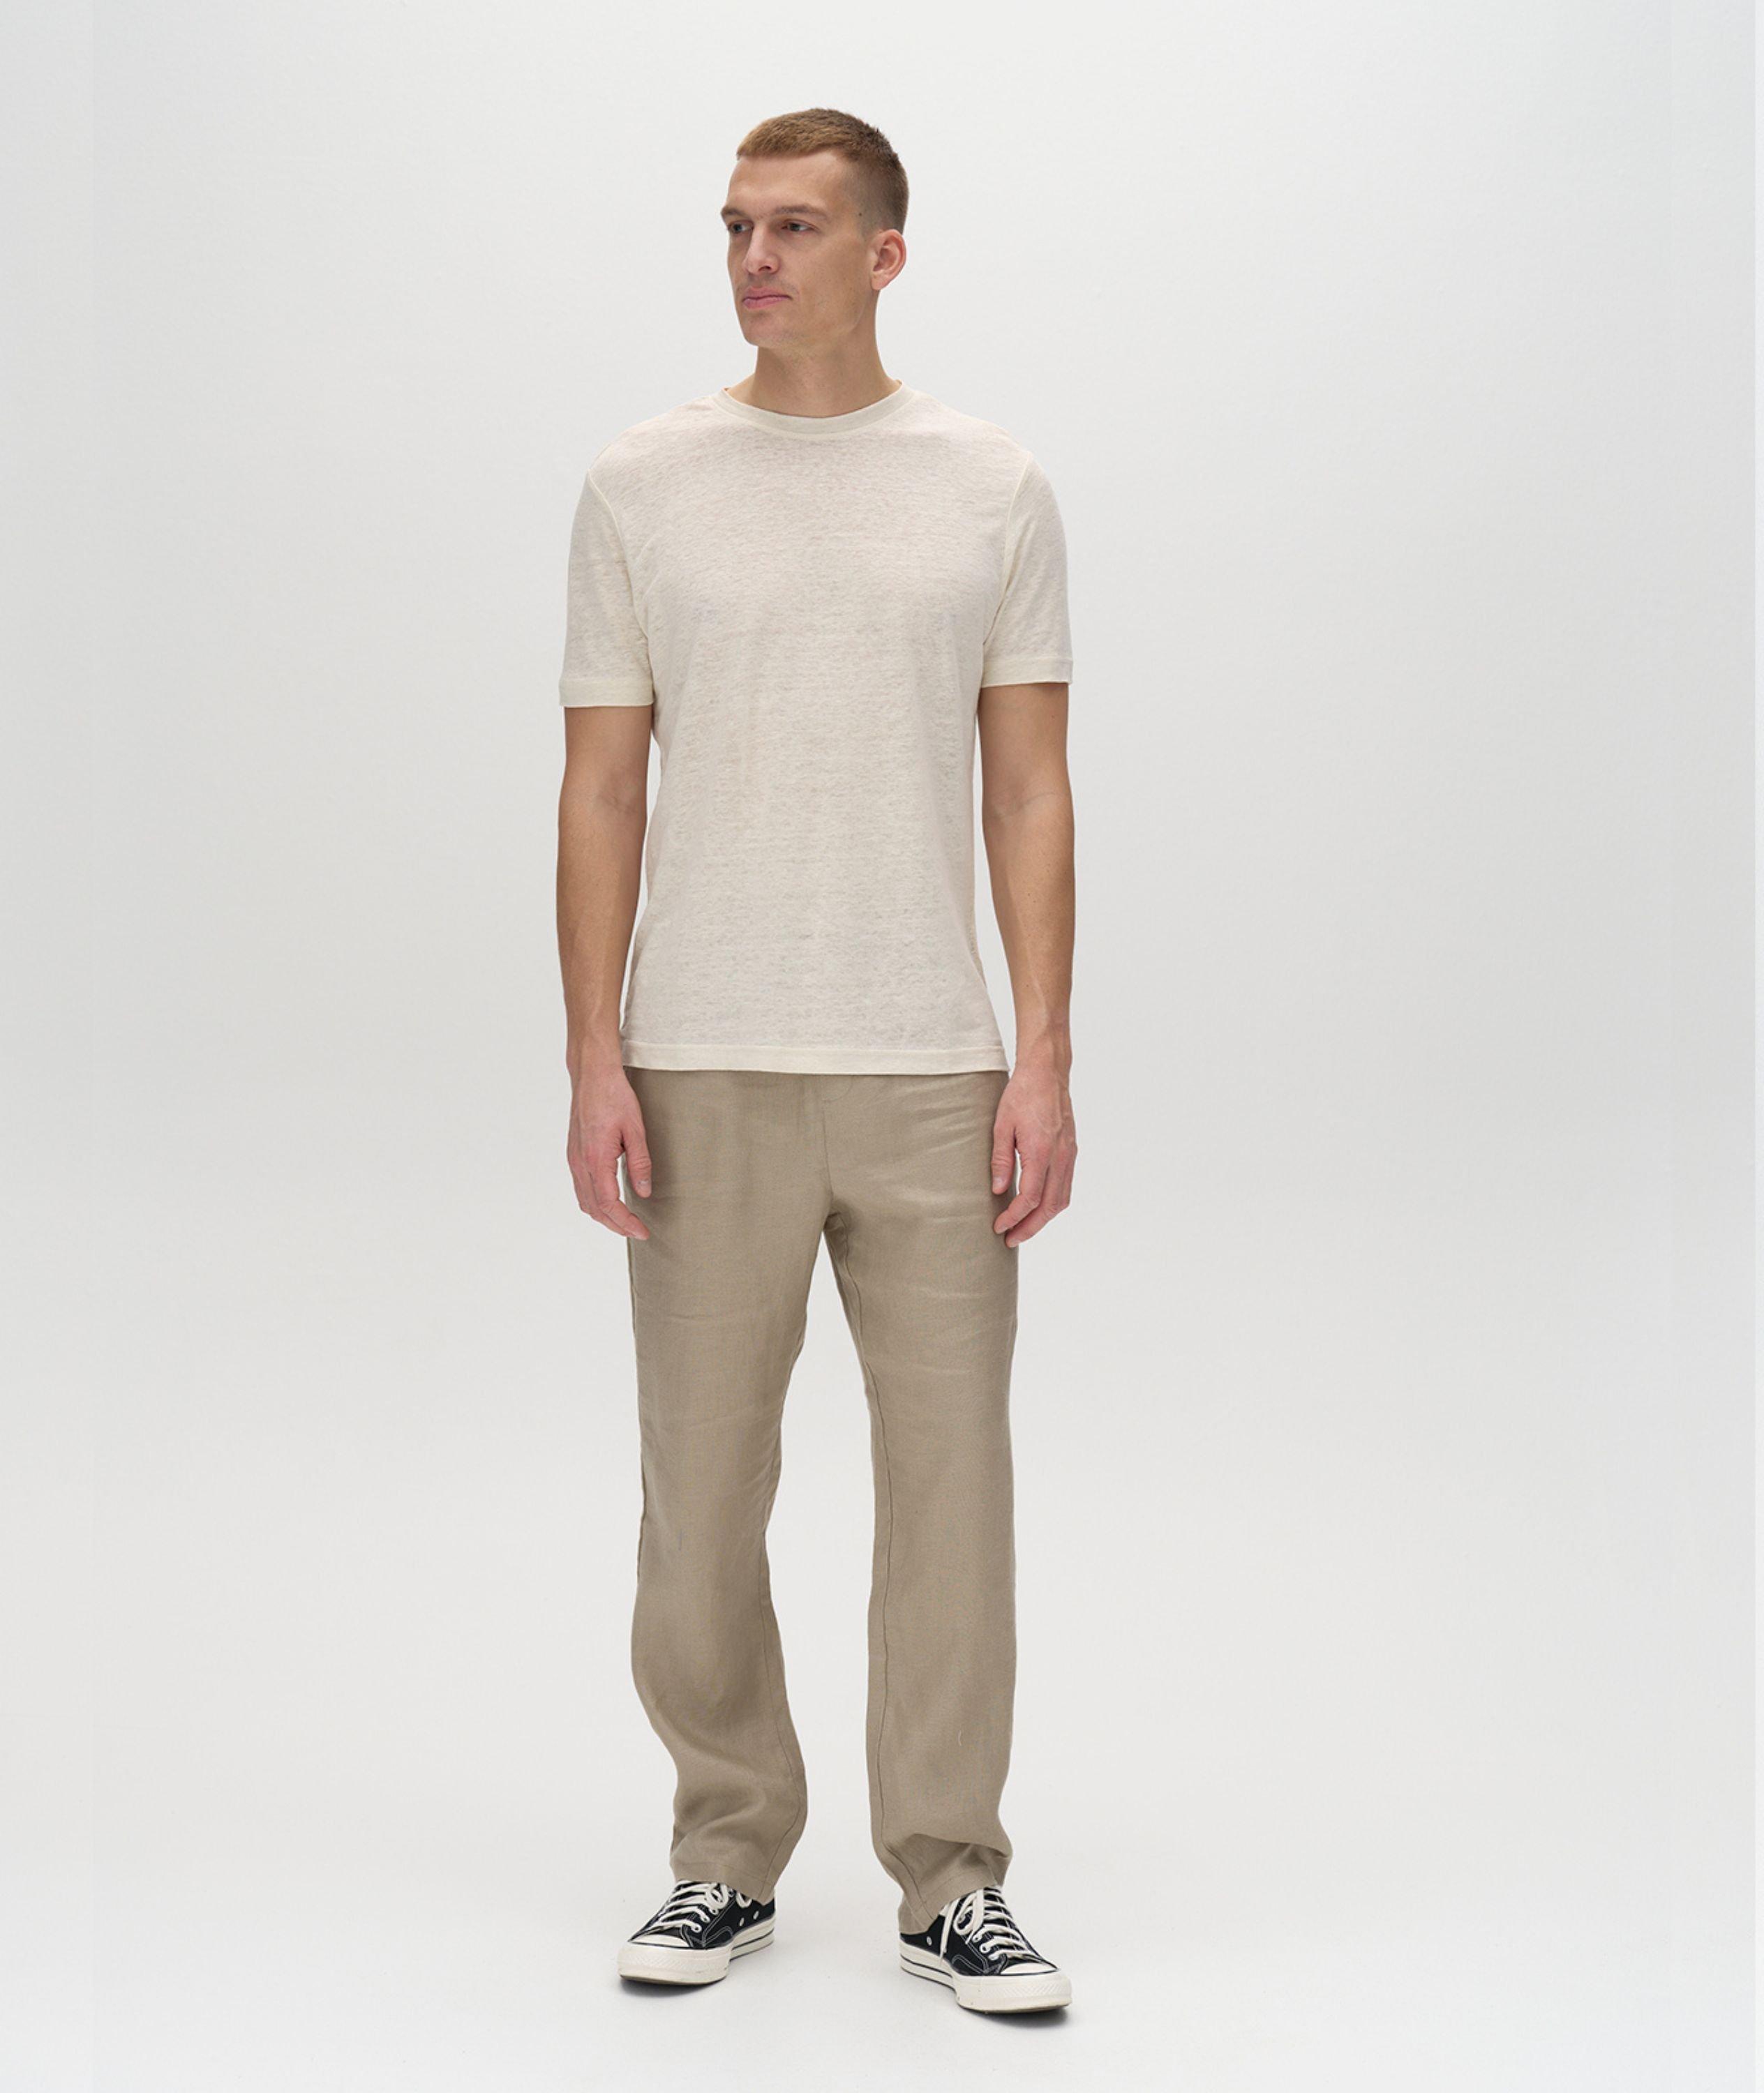 Duke Linen T-Shirt image 5